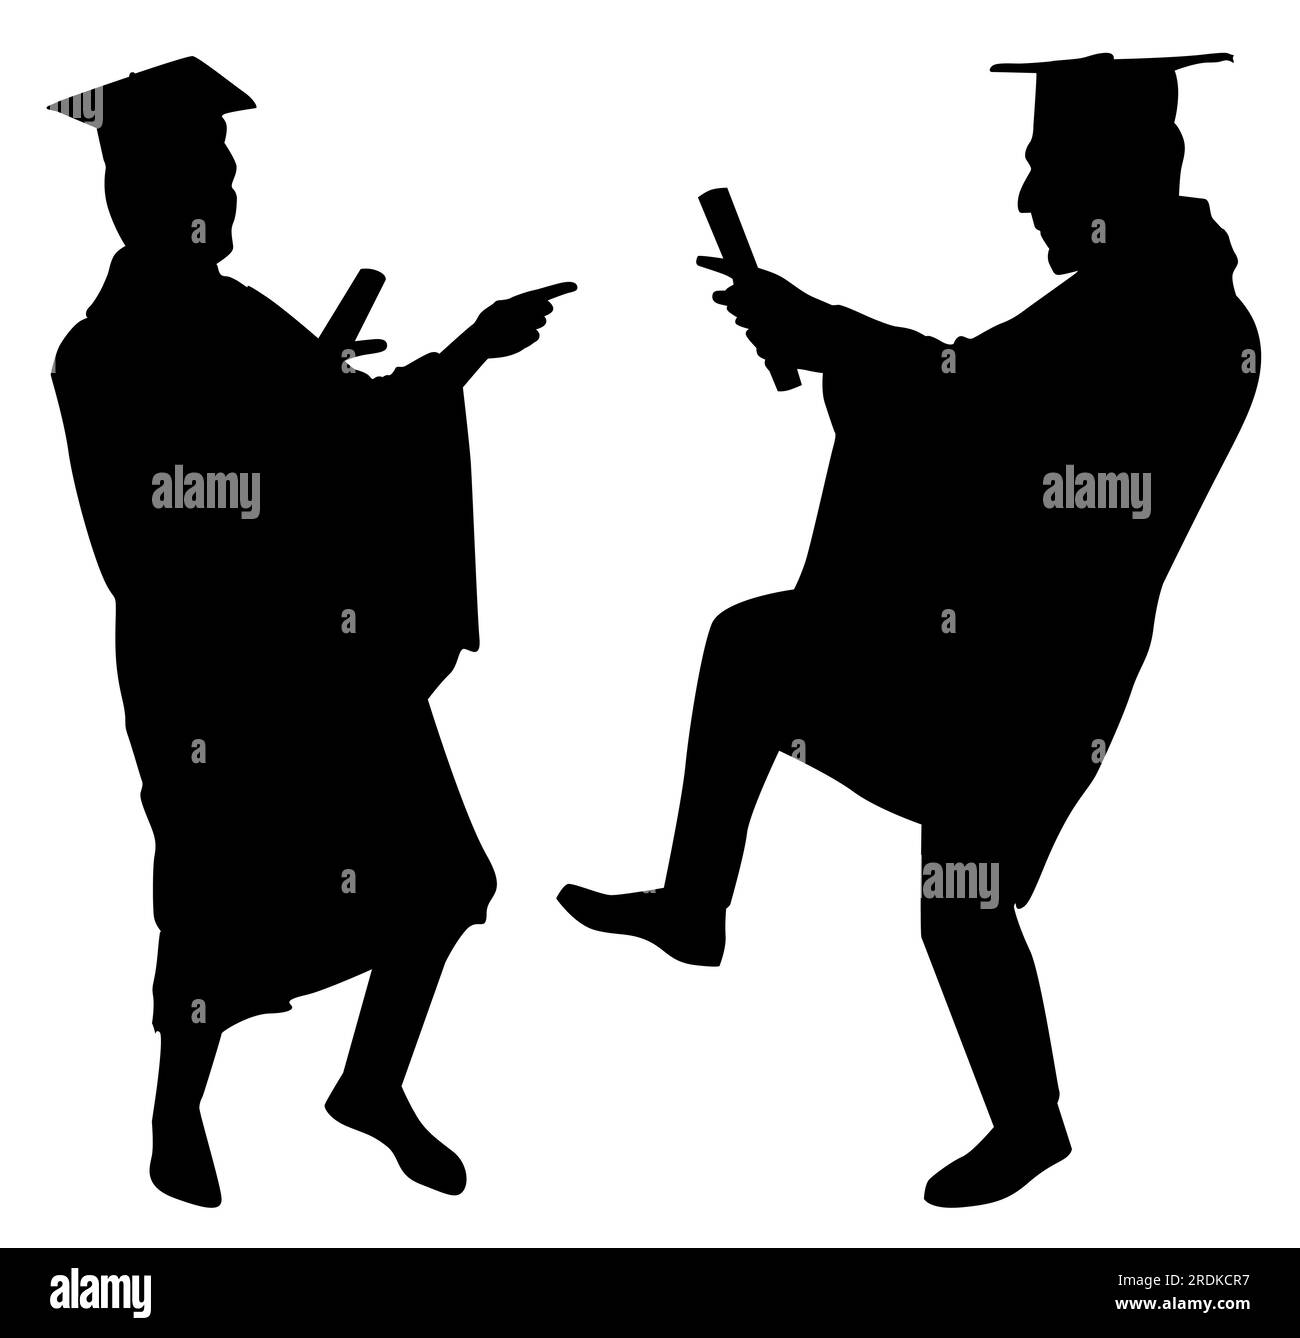 Sagome vettoriali per due persone, evento di celebrazione della laurea. Illustrazione isolata su sfondo bianco. Illustrazione Vettoriale